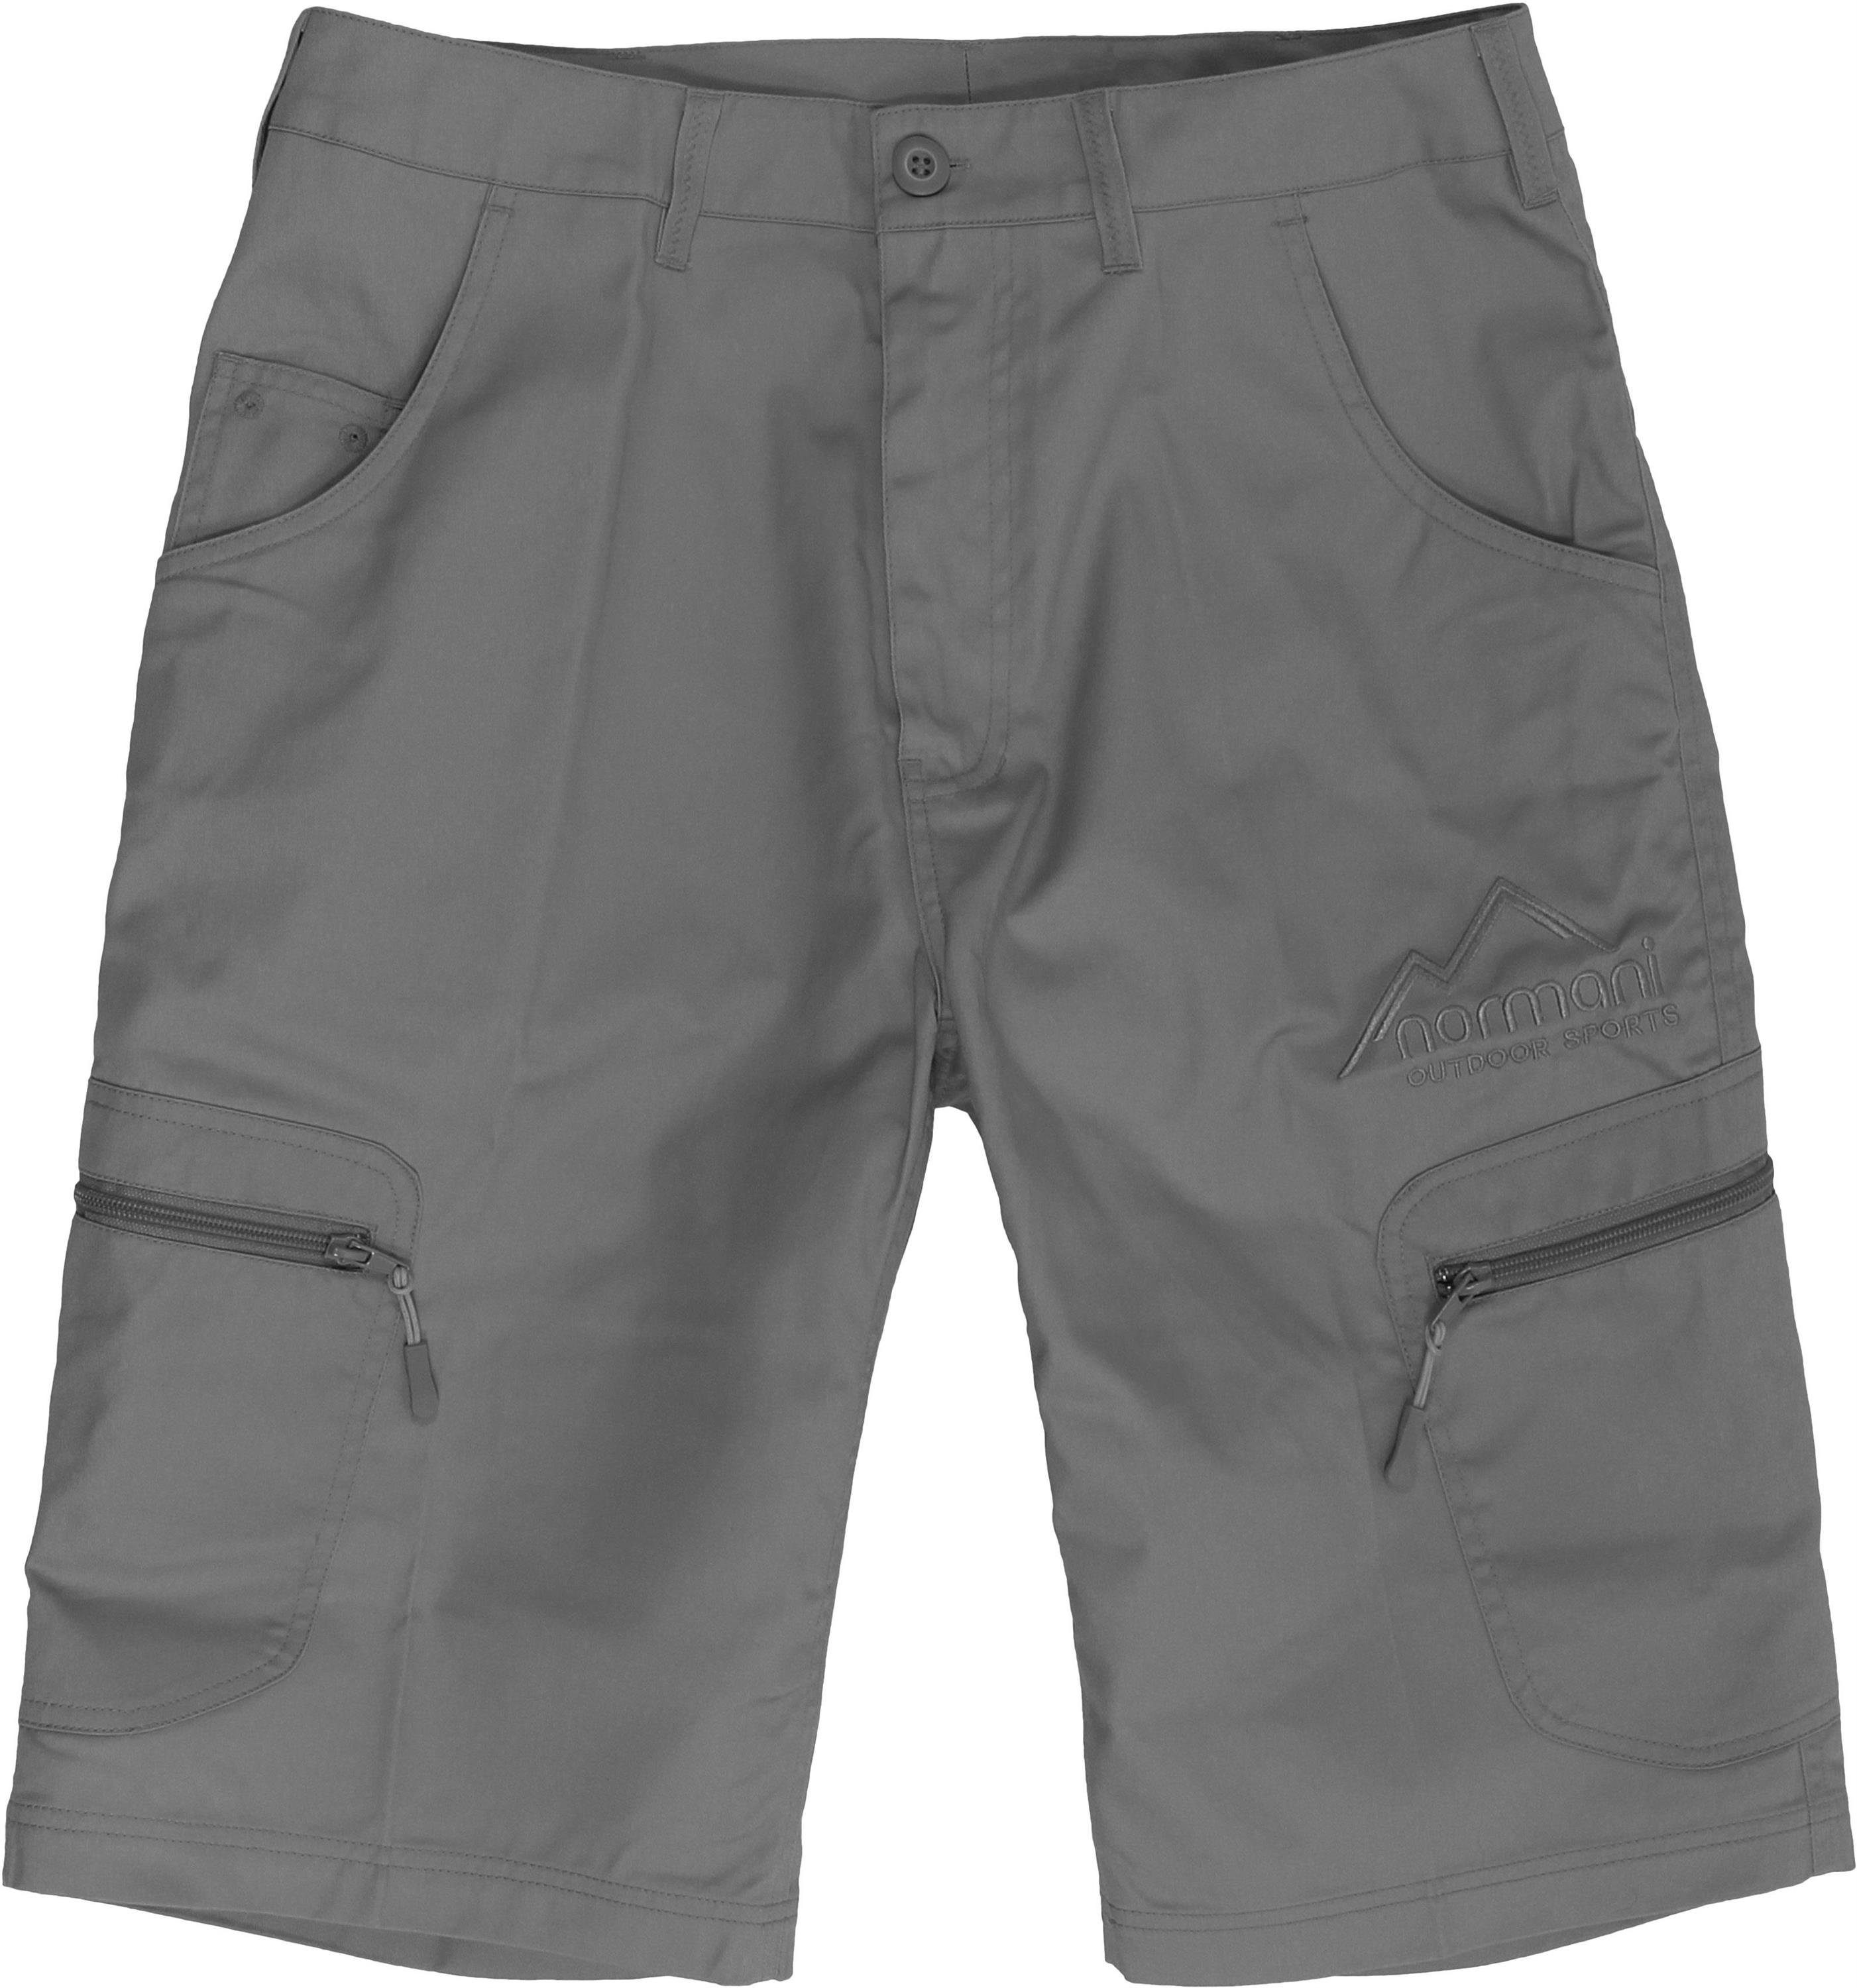 normani Bermudas Shorts Herren Sommershorts UV-Schutz BDU Valley Grau 50+ mit Sonnenschutzfaktor mit